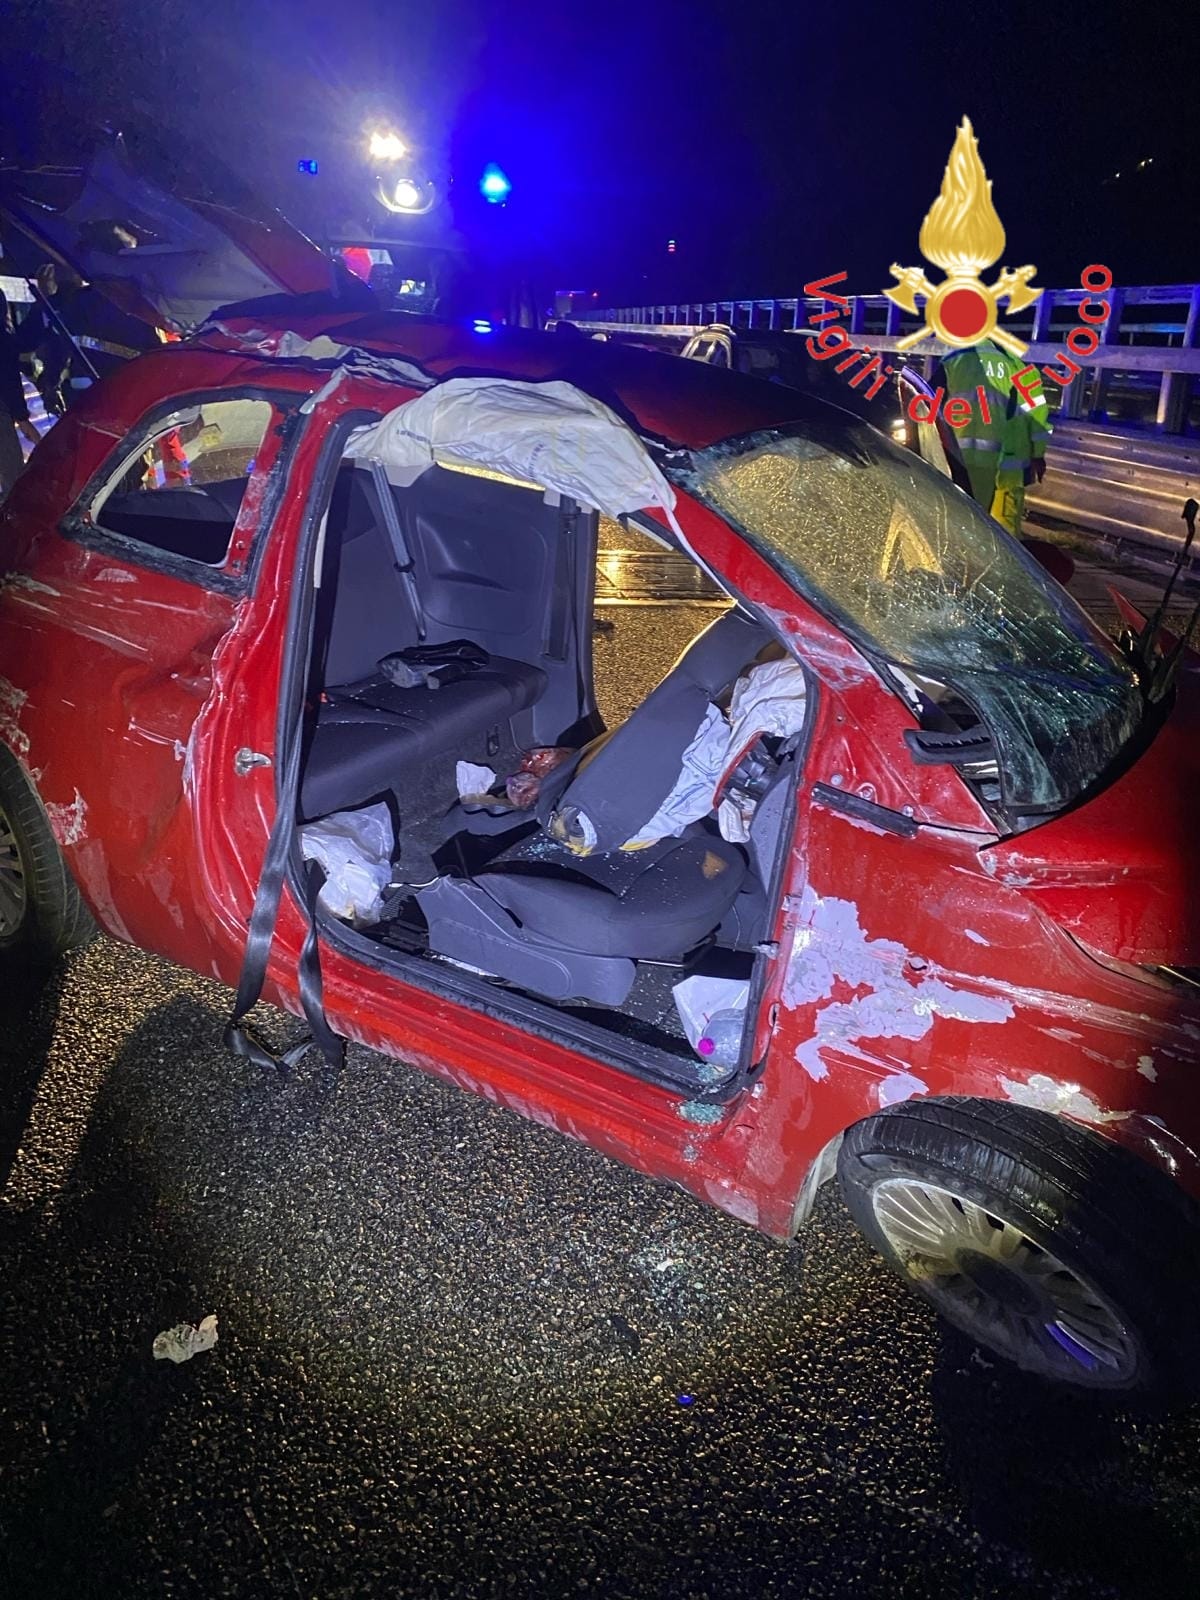  ‣ adn24 san mango d'aquino (cs) | altro terribile incidente in calabria, questa volta in autostrada nella notte: 4 feriti